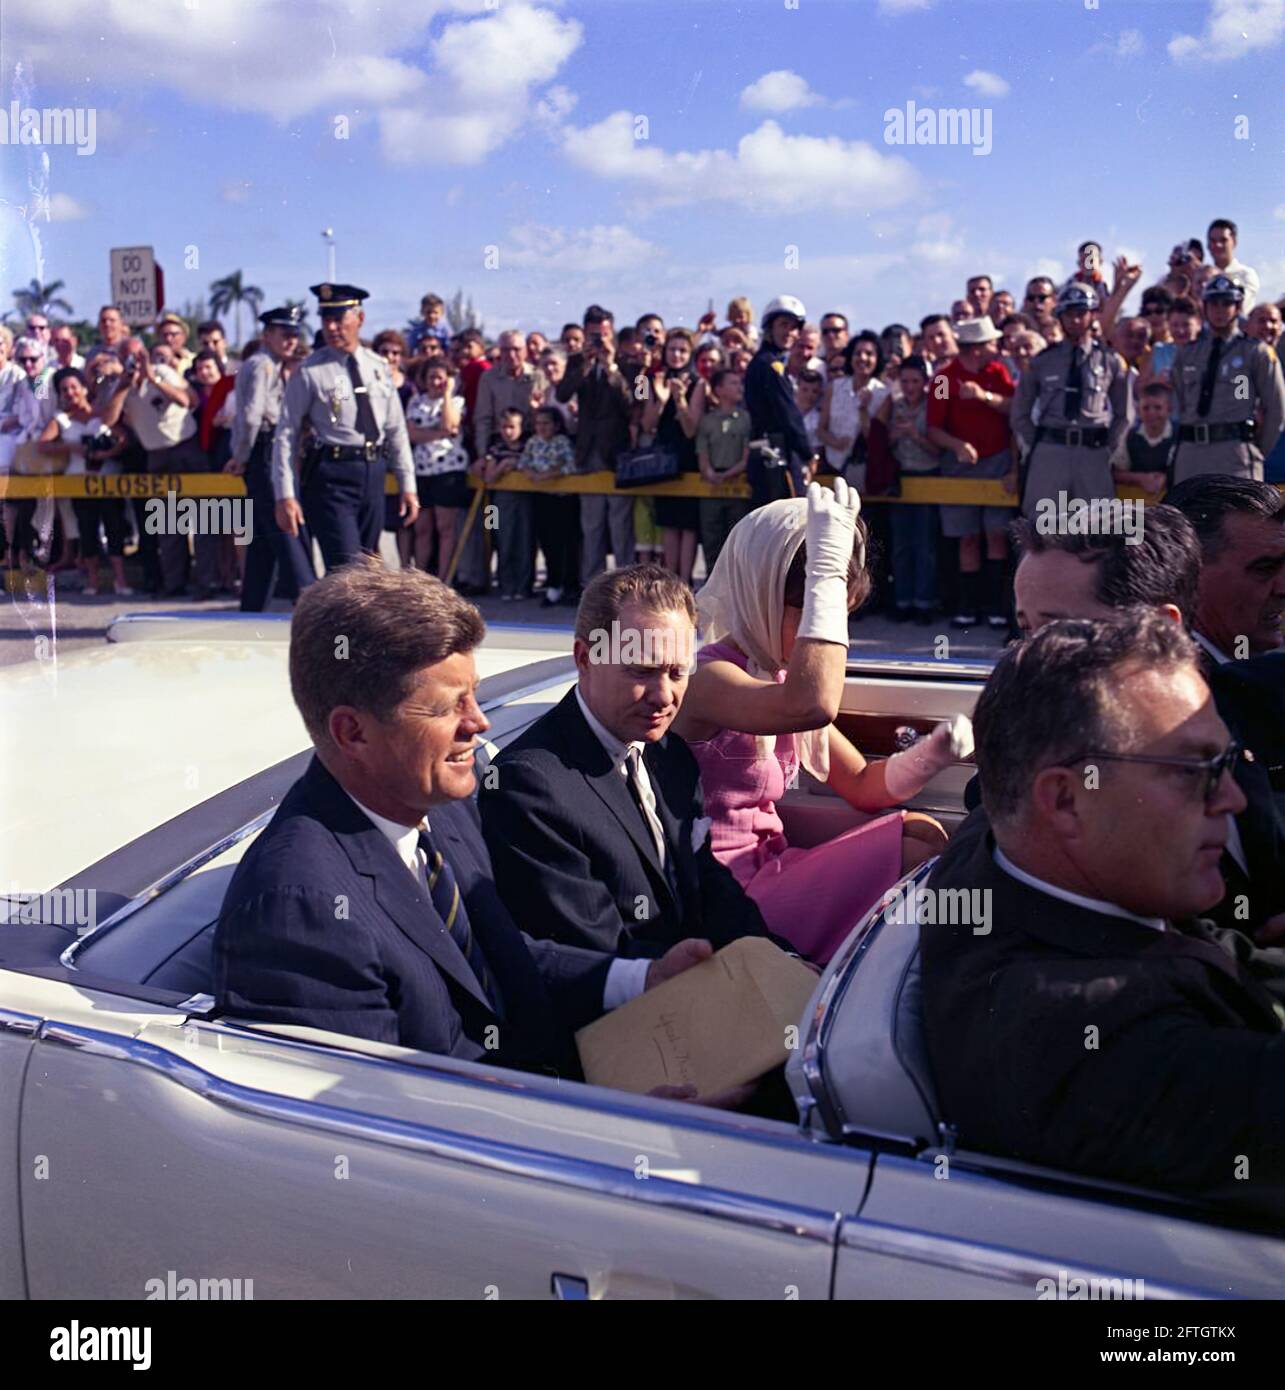 Le président John F. Kennedy et la première dame Jacqueline Kennedy se déplacent à l'arrière d'un cabriolet alors que leur cortège se rend au stade Orange Bowl à Miami, en Floride, pour une cérémonie de présentation du 2506e drapeau de la brigade d'invasion cubaine. Le président Kennedy tient sur ses genoux une grande enveloppe inscrite avec une note manuscrite, "Peech - Miami"; le maire de Miami, Robert King High, siège entre le président et Mme Kennedy (portant des gants blancs et un foulard enveloppé sous son menton). Sur le siège avant de la voiture (de gauche à droite) : agent du service secret de la Maison Blanche, Floyd Boring. Banque D'Images